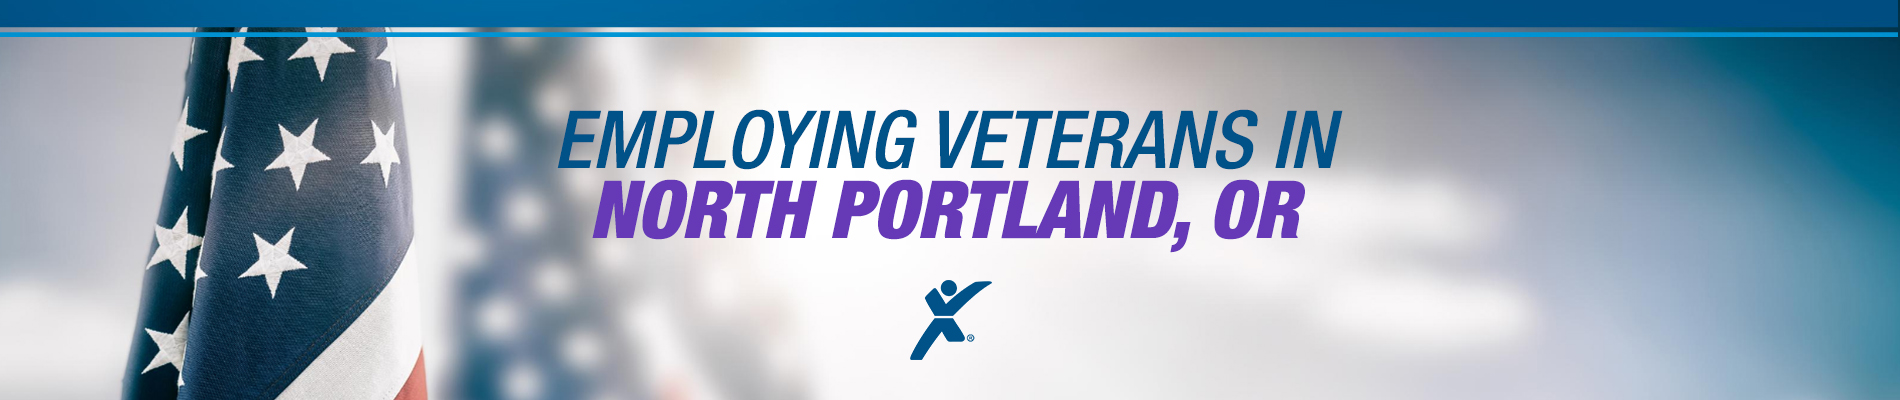 Express NoPo Hires Veterans in North Portland, Oregon